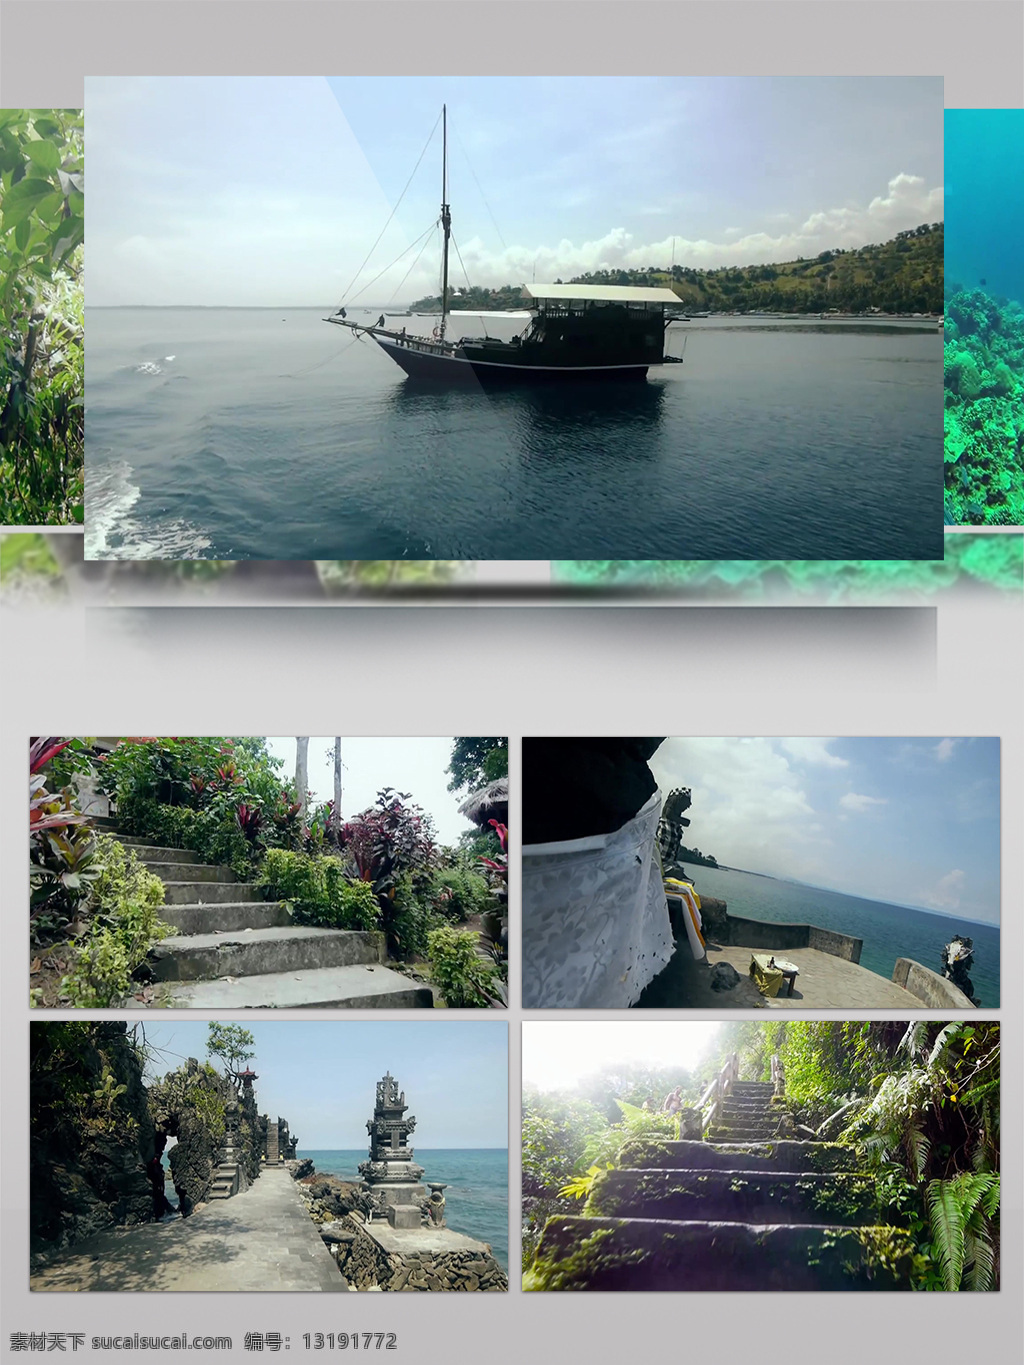 印度尼西亚 龙目岛 休闲度假 风光 自然风光 休闲 度假 旅游 历史 人文 地域风情